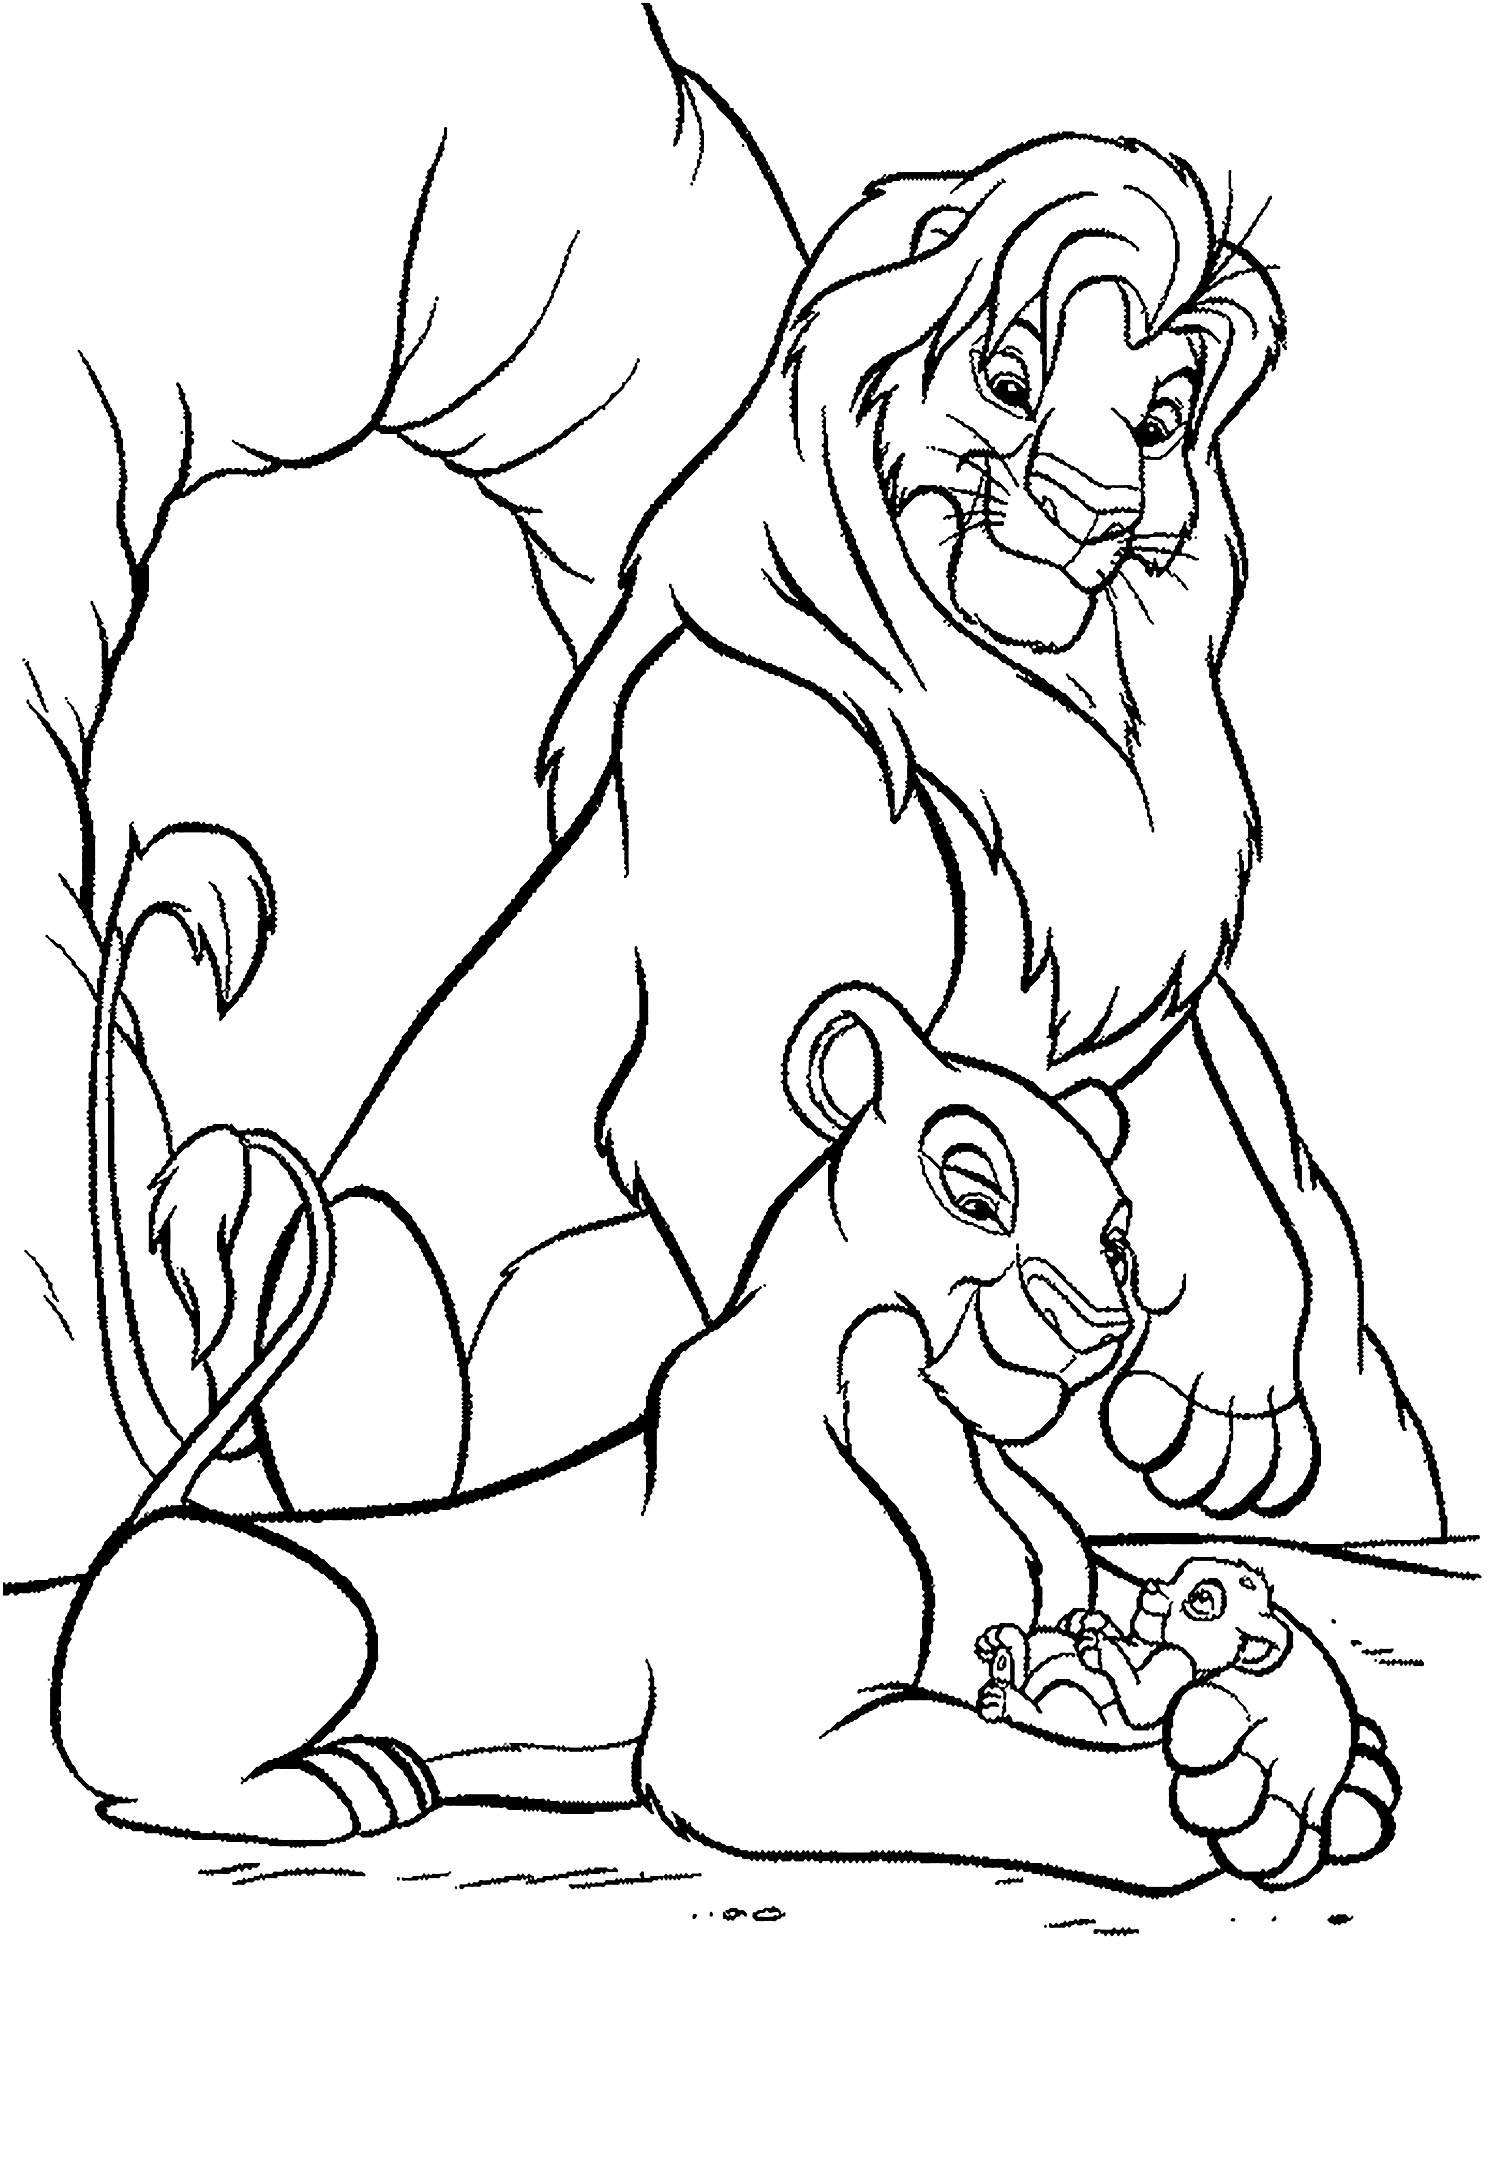 Rei Leão (Disney), página para colorir com Nala, Mufasa e Simba